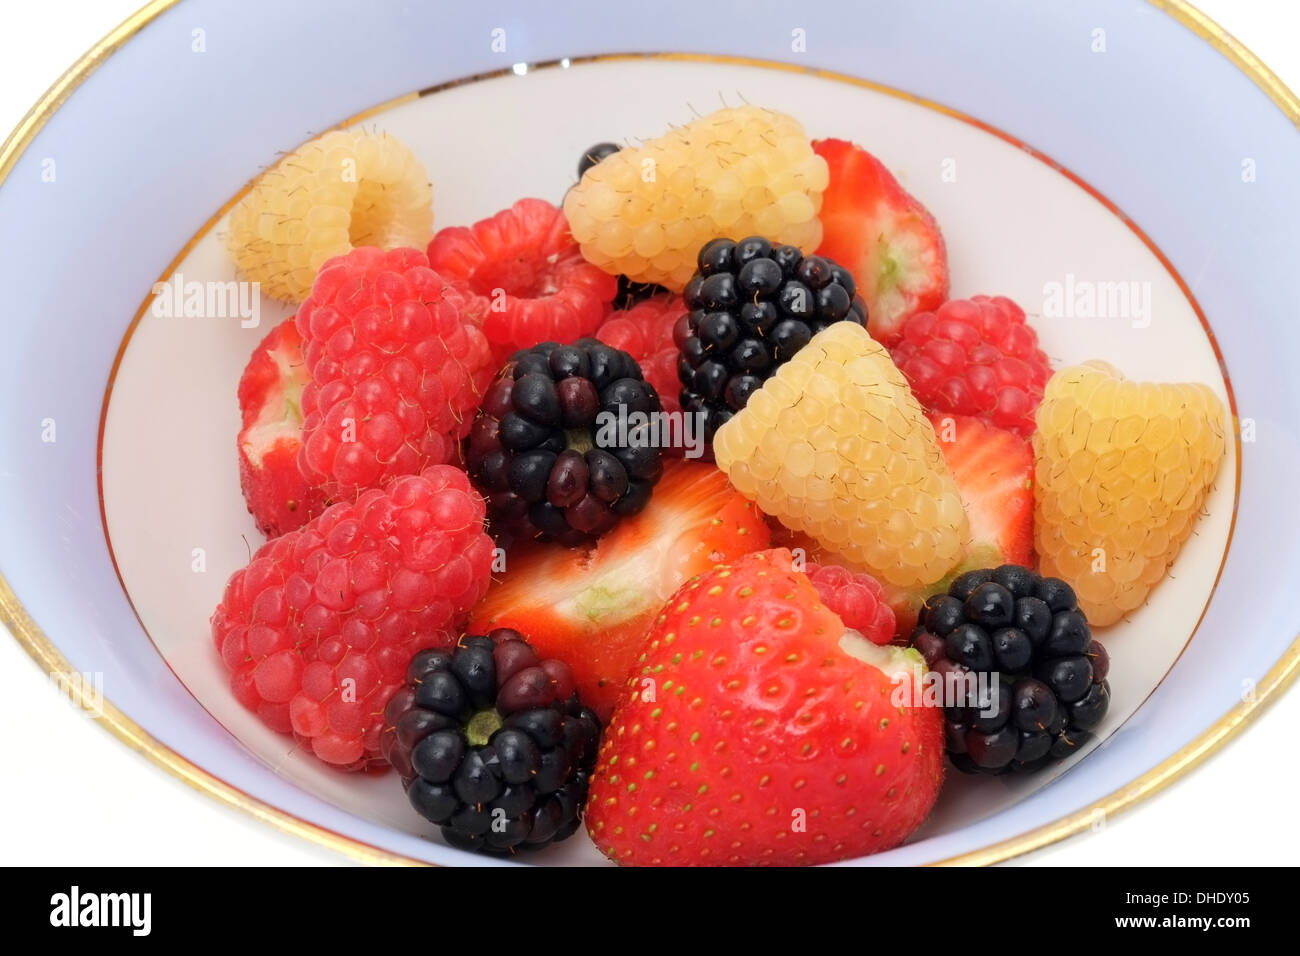 Eine Schüssel mit gemischten Beeren - Erdbeeren, Brombeeren und Himbeeren Stockfoto